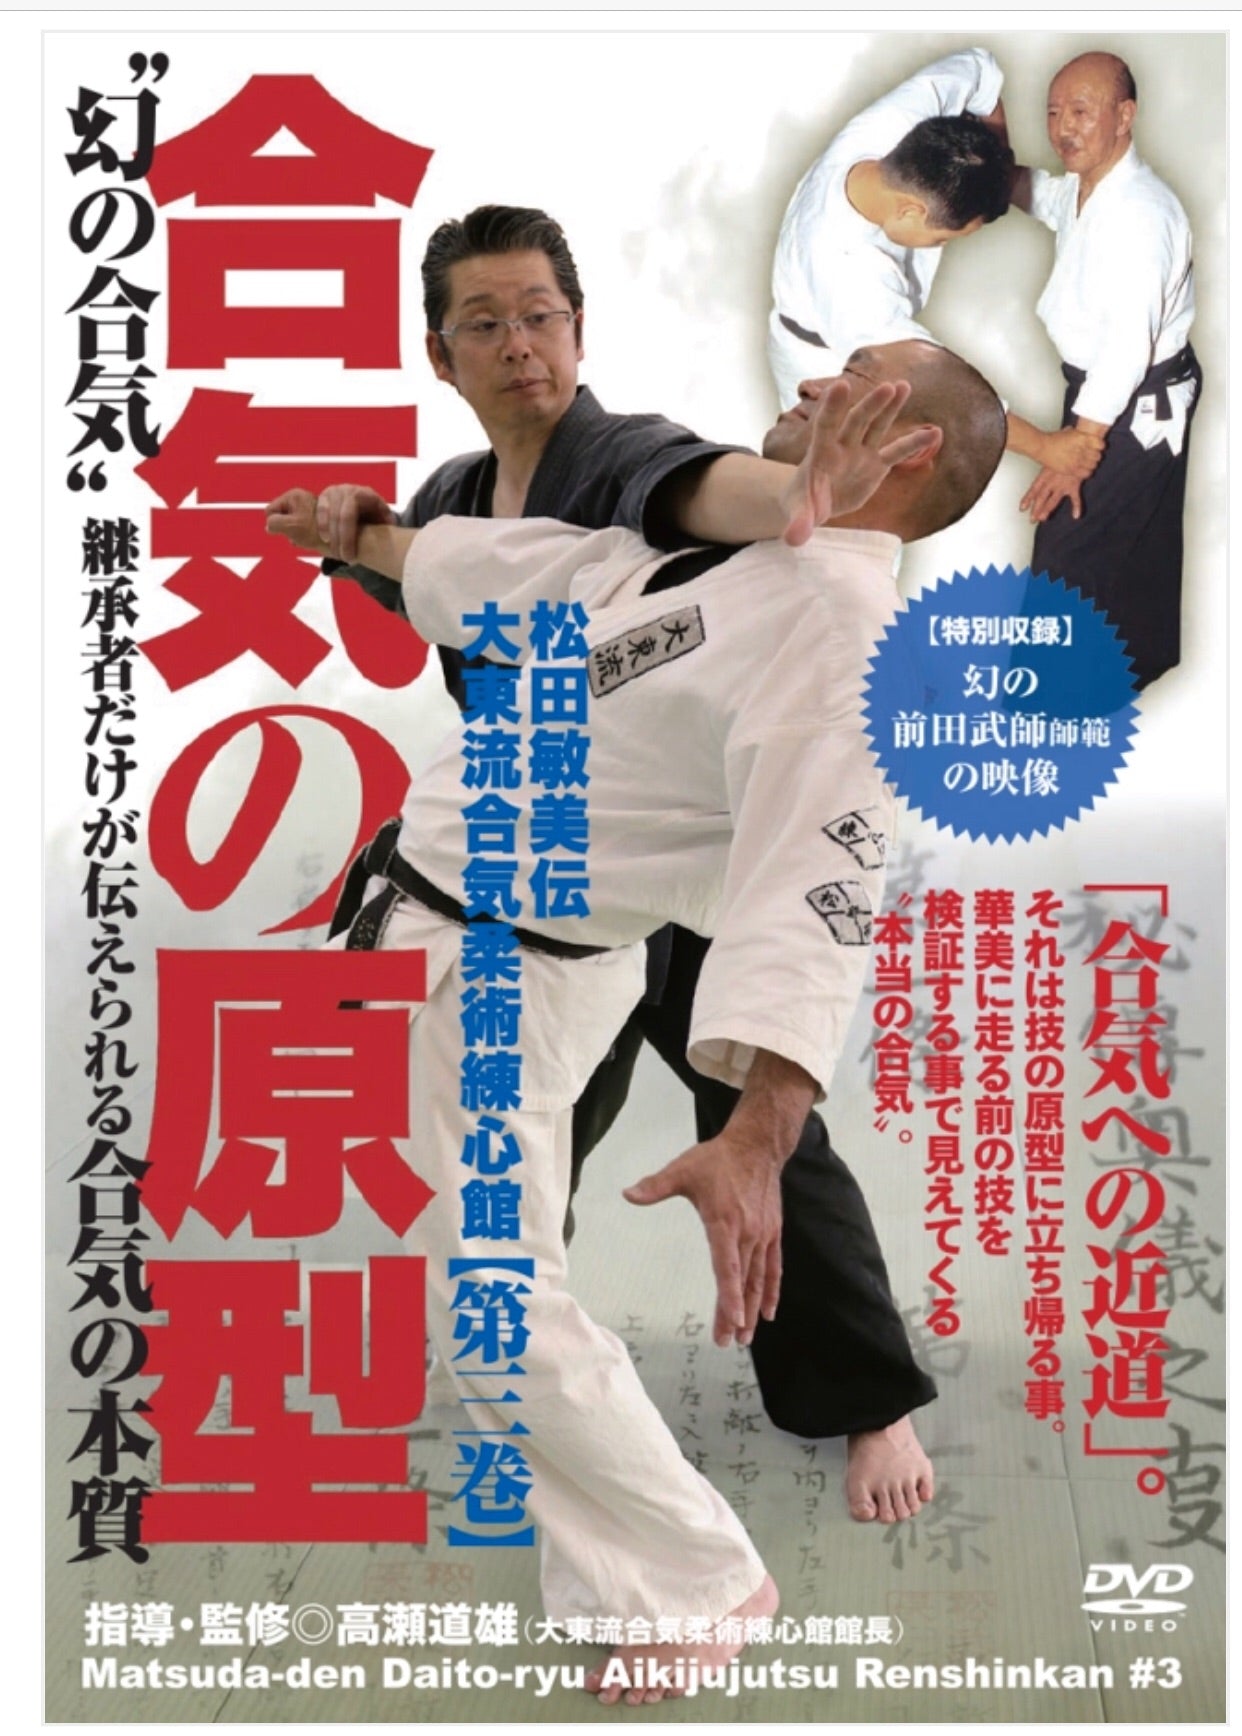 Daito Ryu Aikijujutsu Renshinkan DVD 3 by Michio Takase - Budovideos Inc